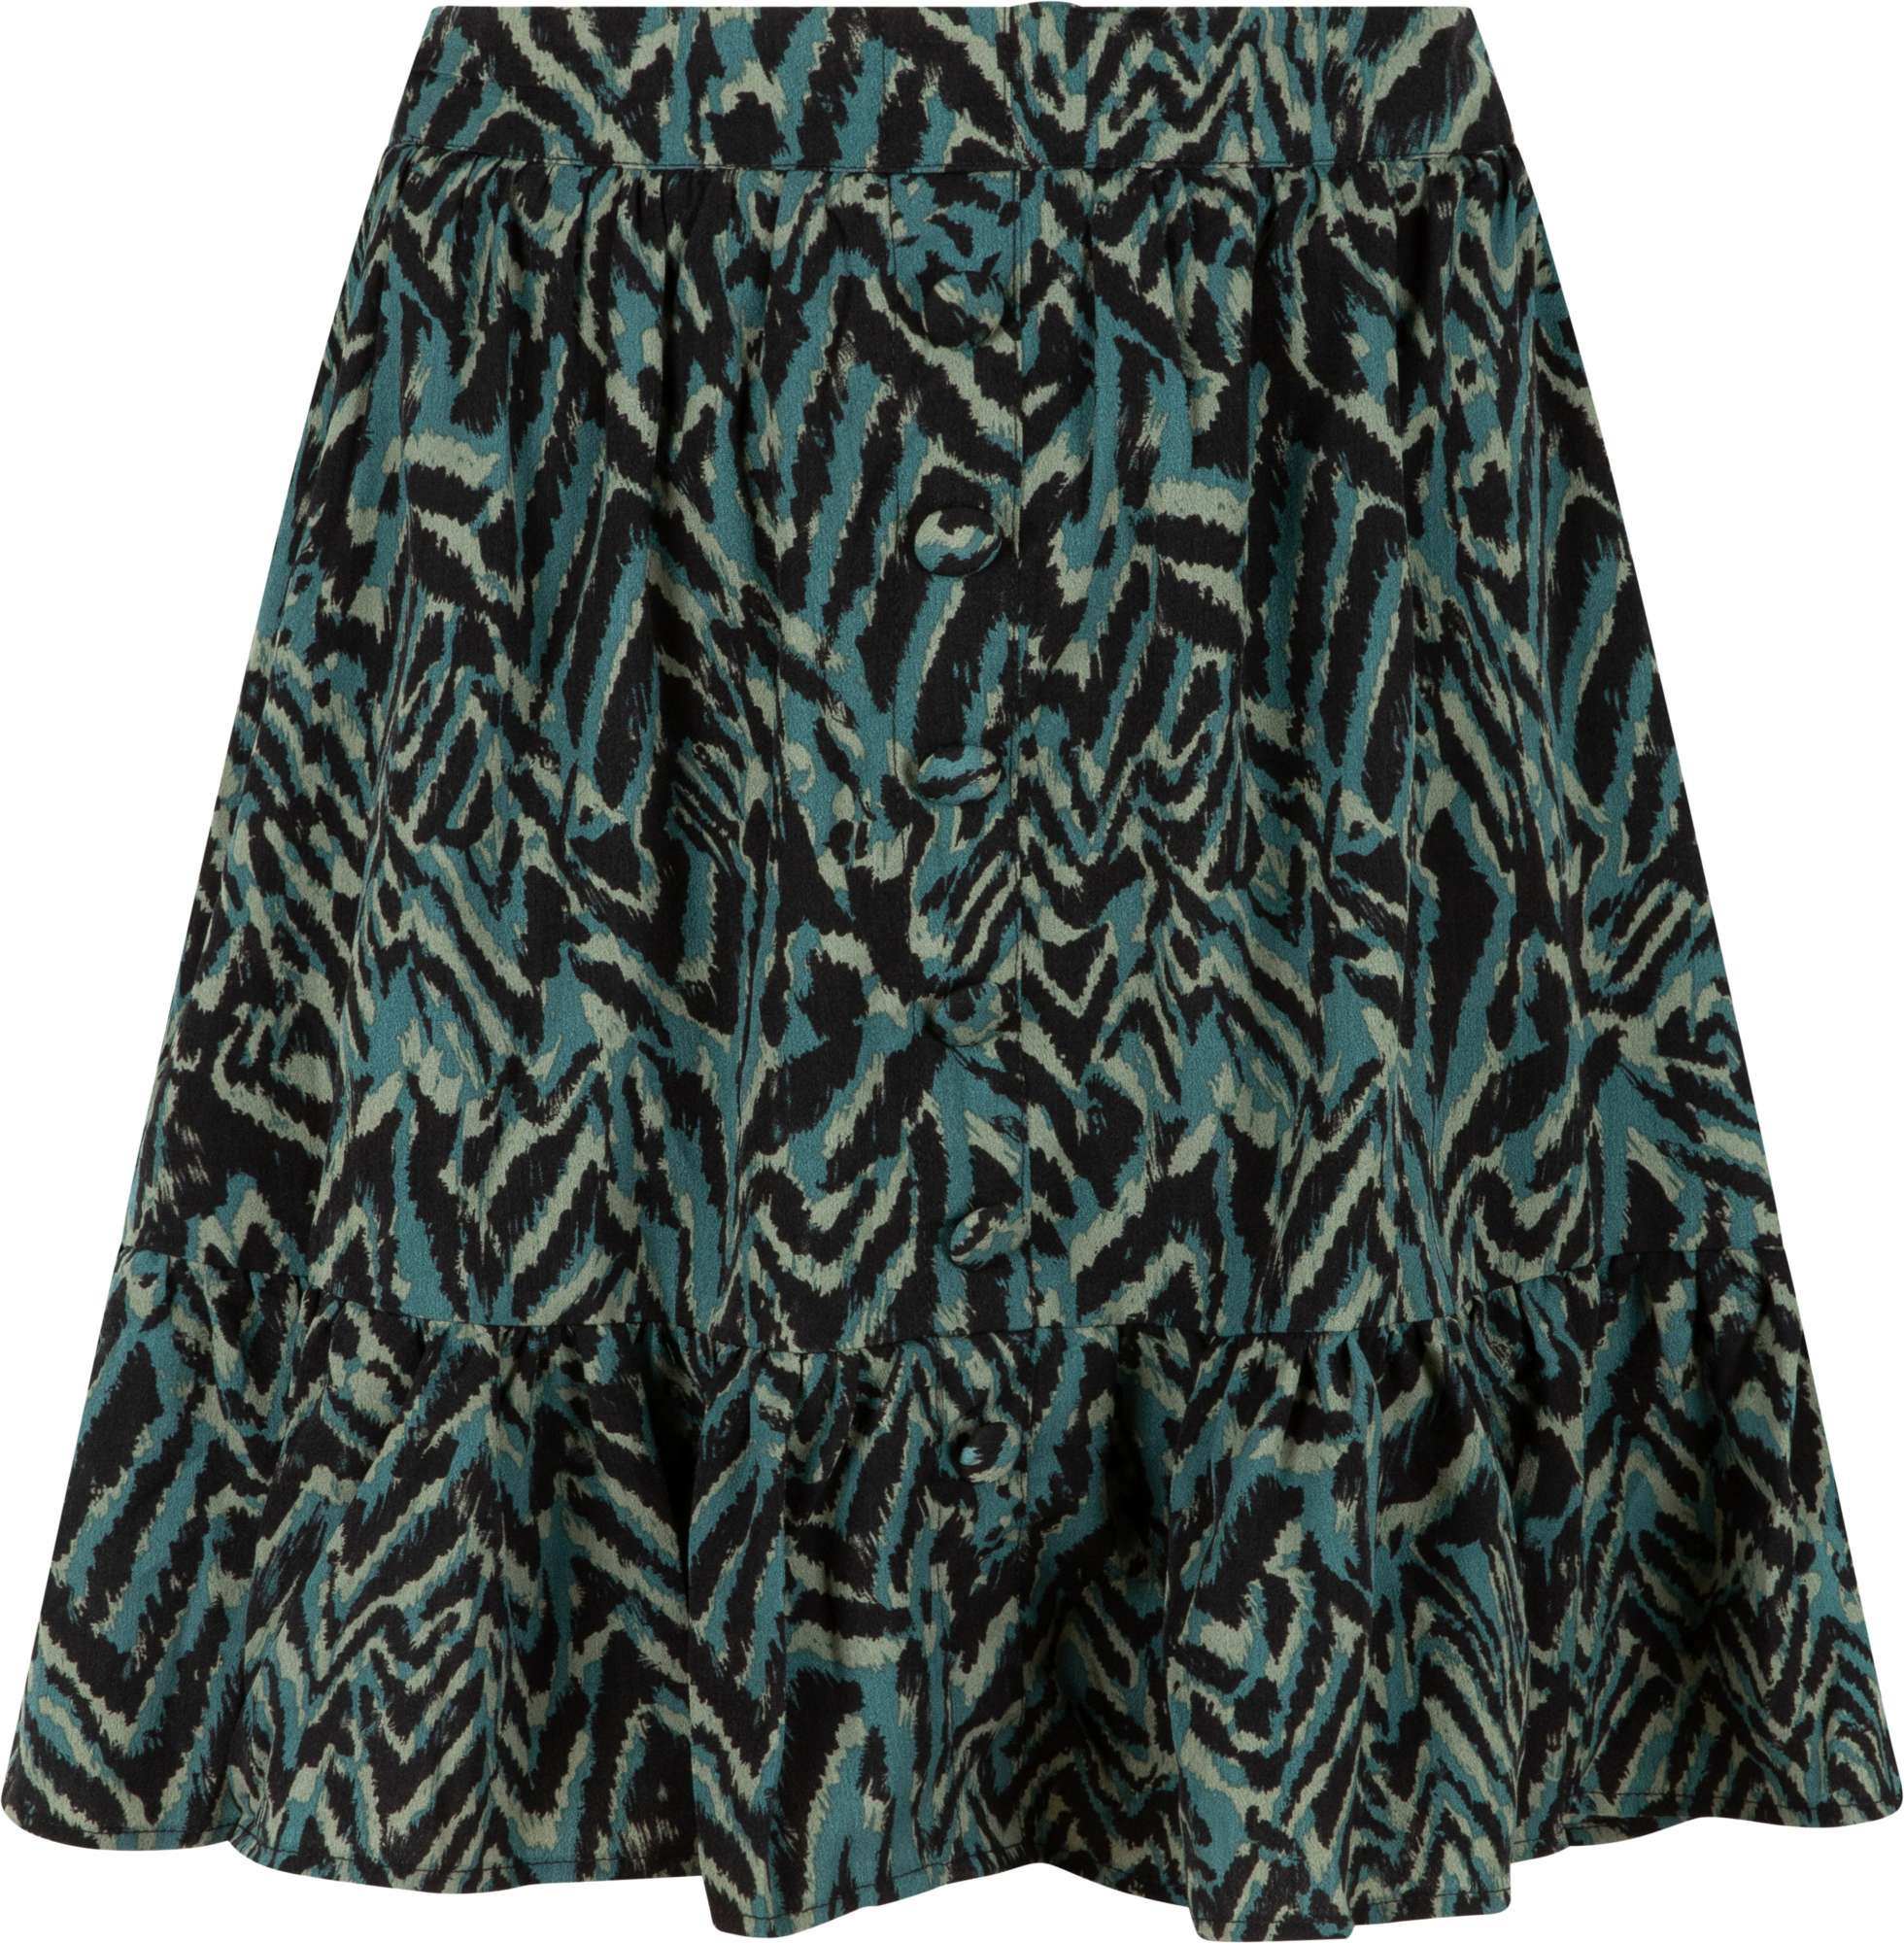 Afbeelding van Lofty Manner Skirt eva black & green printed